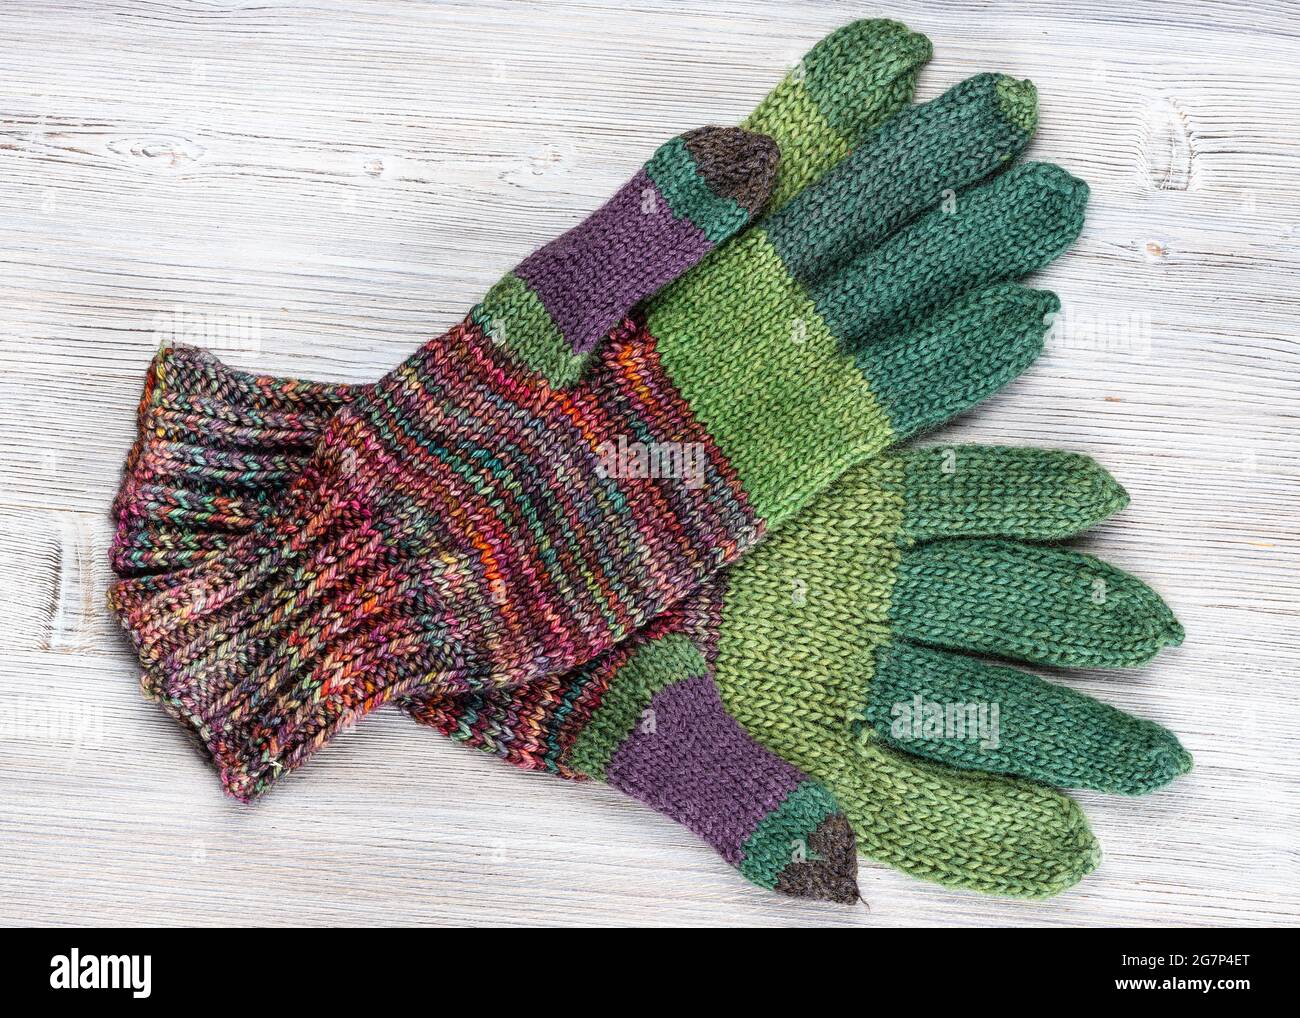 vista superior de un par de guantes de lana tejidos a mano sobre una mesa de madera gris Foto de stock